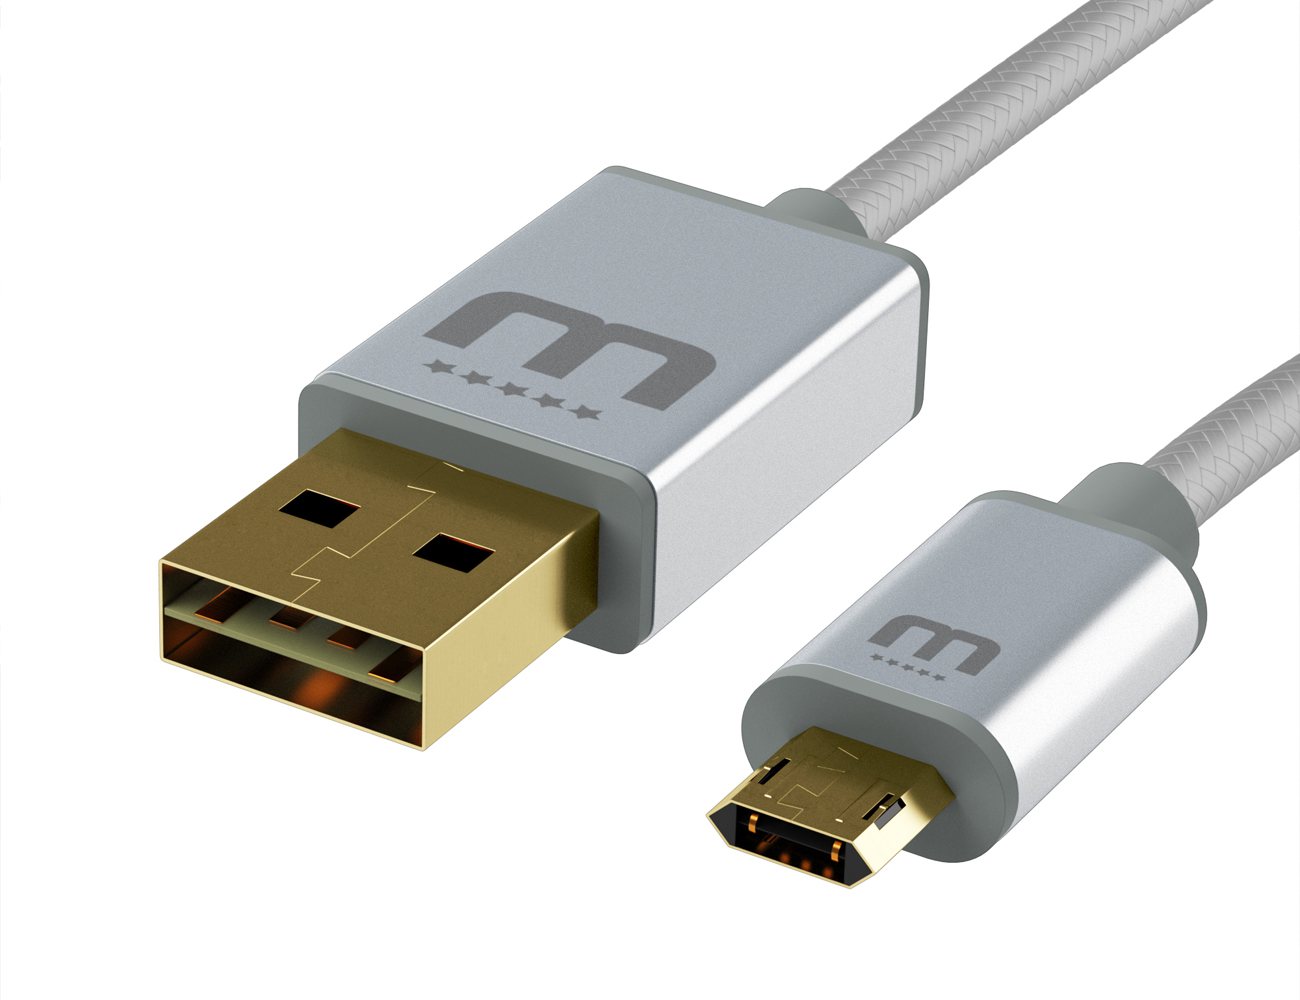 Usb 4 канала. USB Type-a - 4. USB - 4 Micro USB. MICROUSB двухсторонний кабель MICROUSB. Разъем Micro USB симметричный.